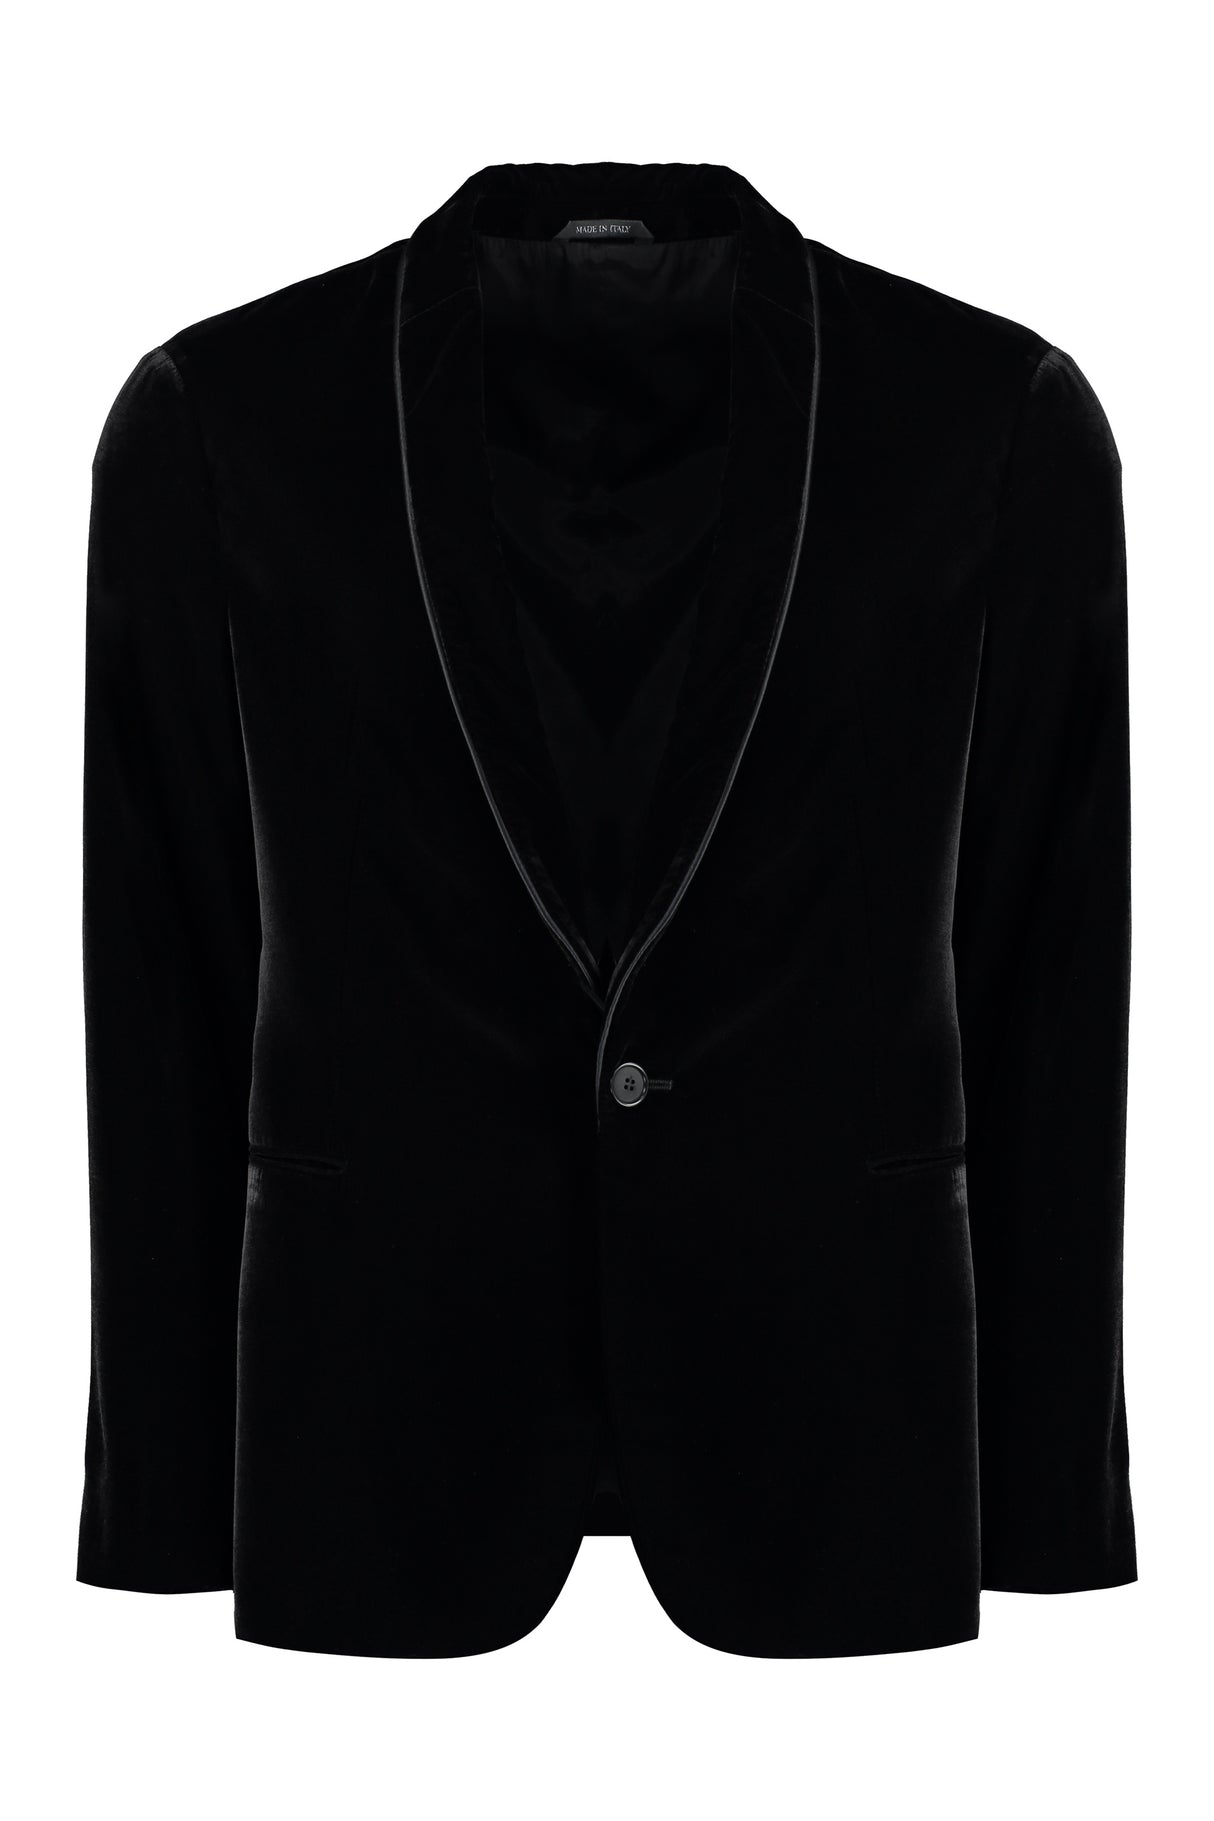 GIORGIO ARMANI Men's Single-Breasted Velvet Jacket for FW23 in Black